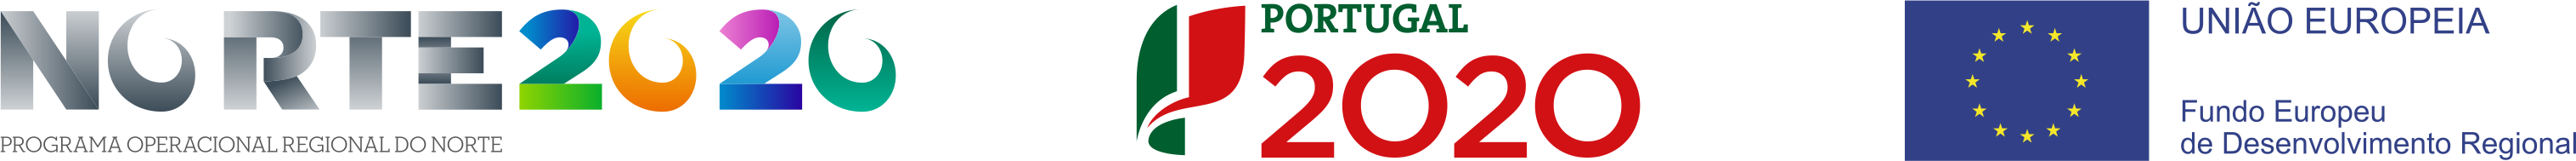 Norte 2020, Portugal 2020, União Europeia - Hyper Metal